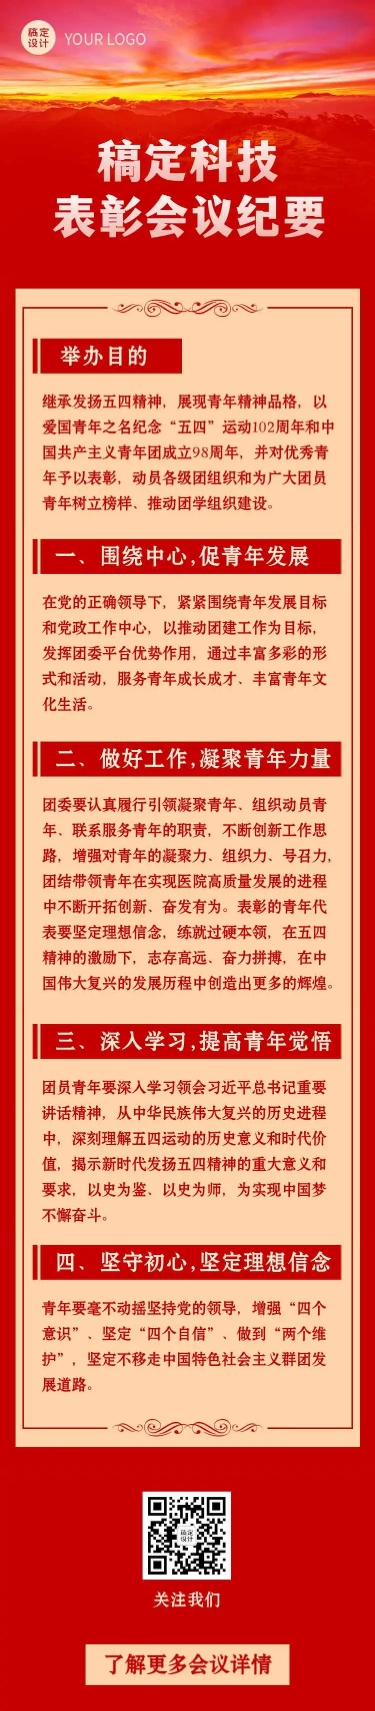 H5长页红色简约大气党政融媒体表彰会议